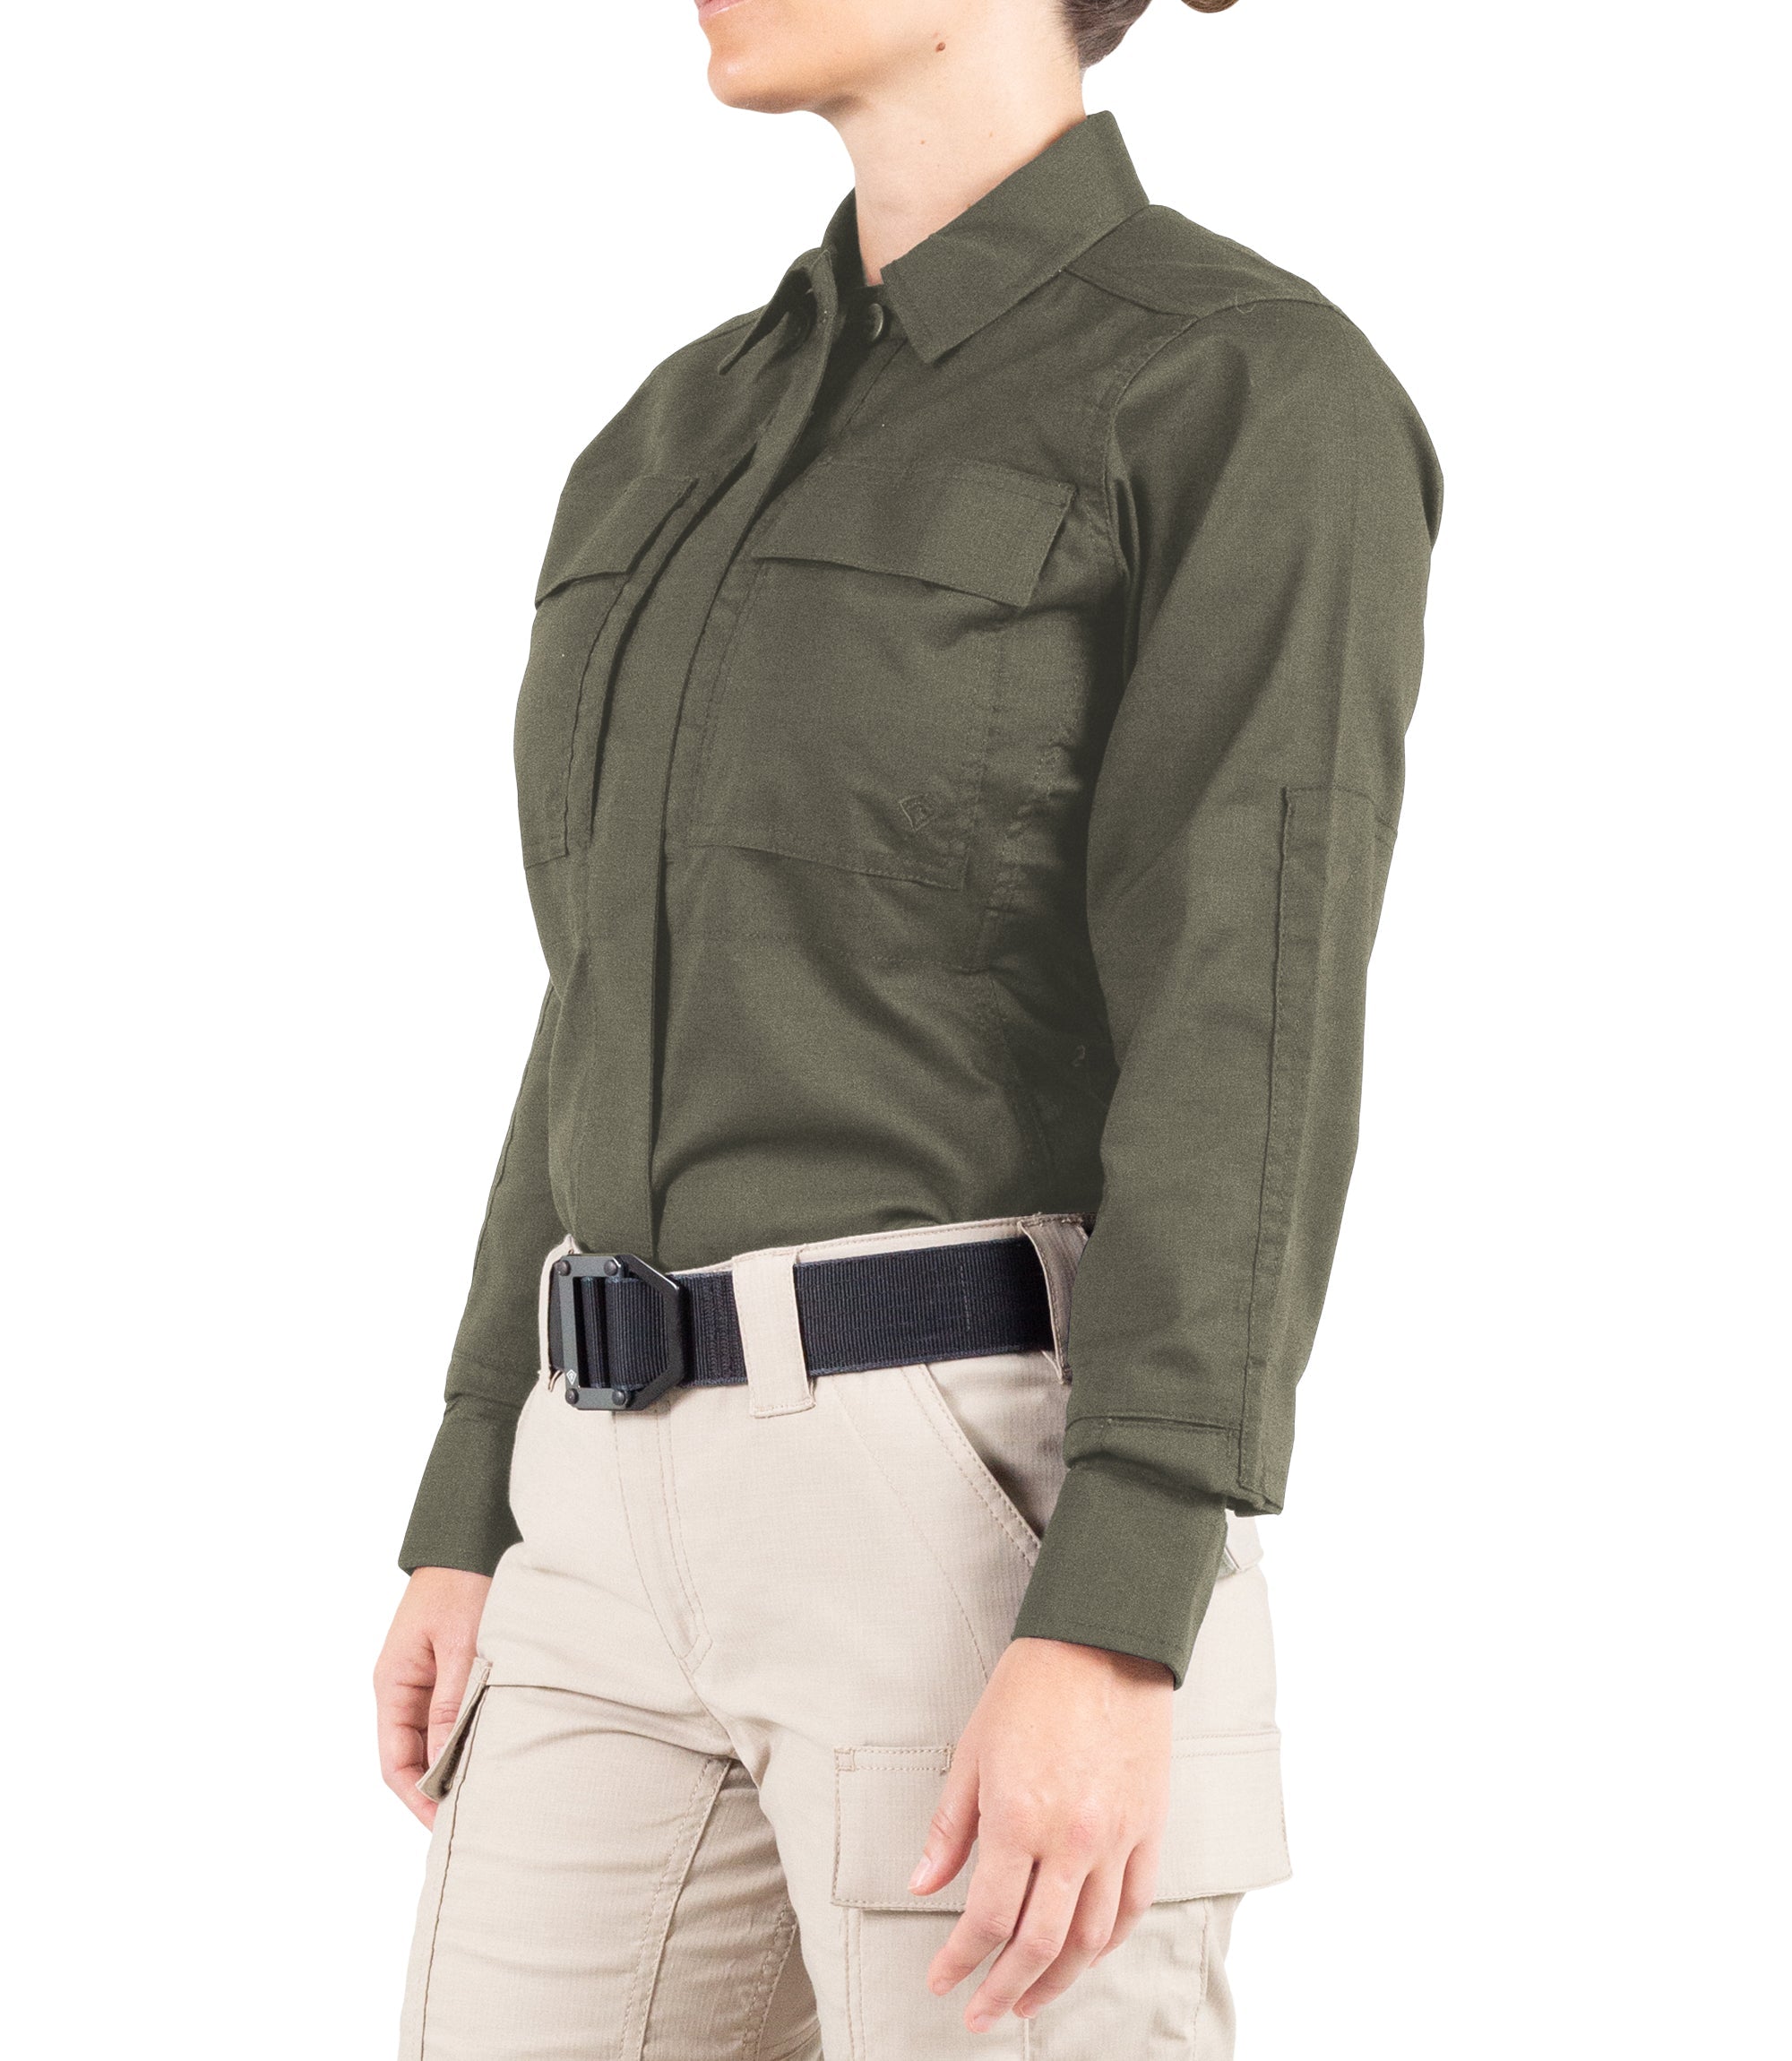 First Tactical - Women's V2 BDU Long Sleeve Shirt